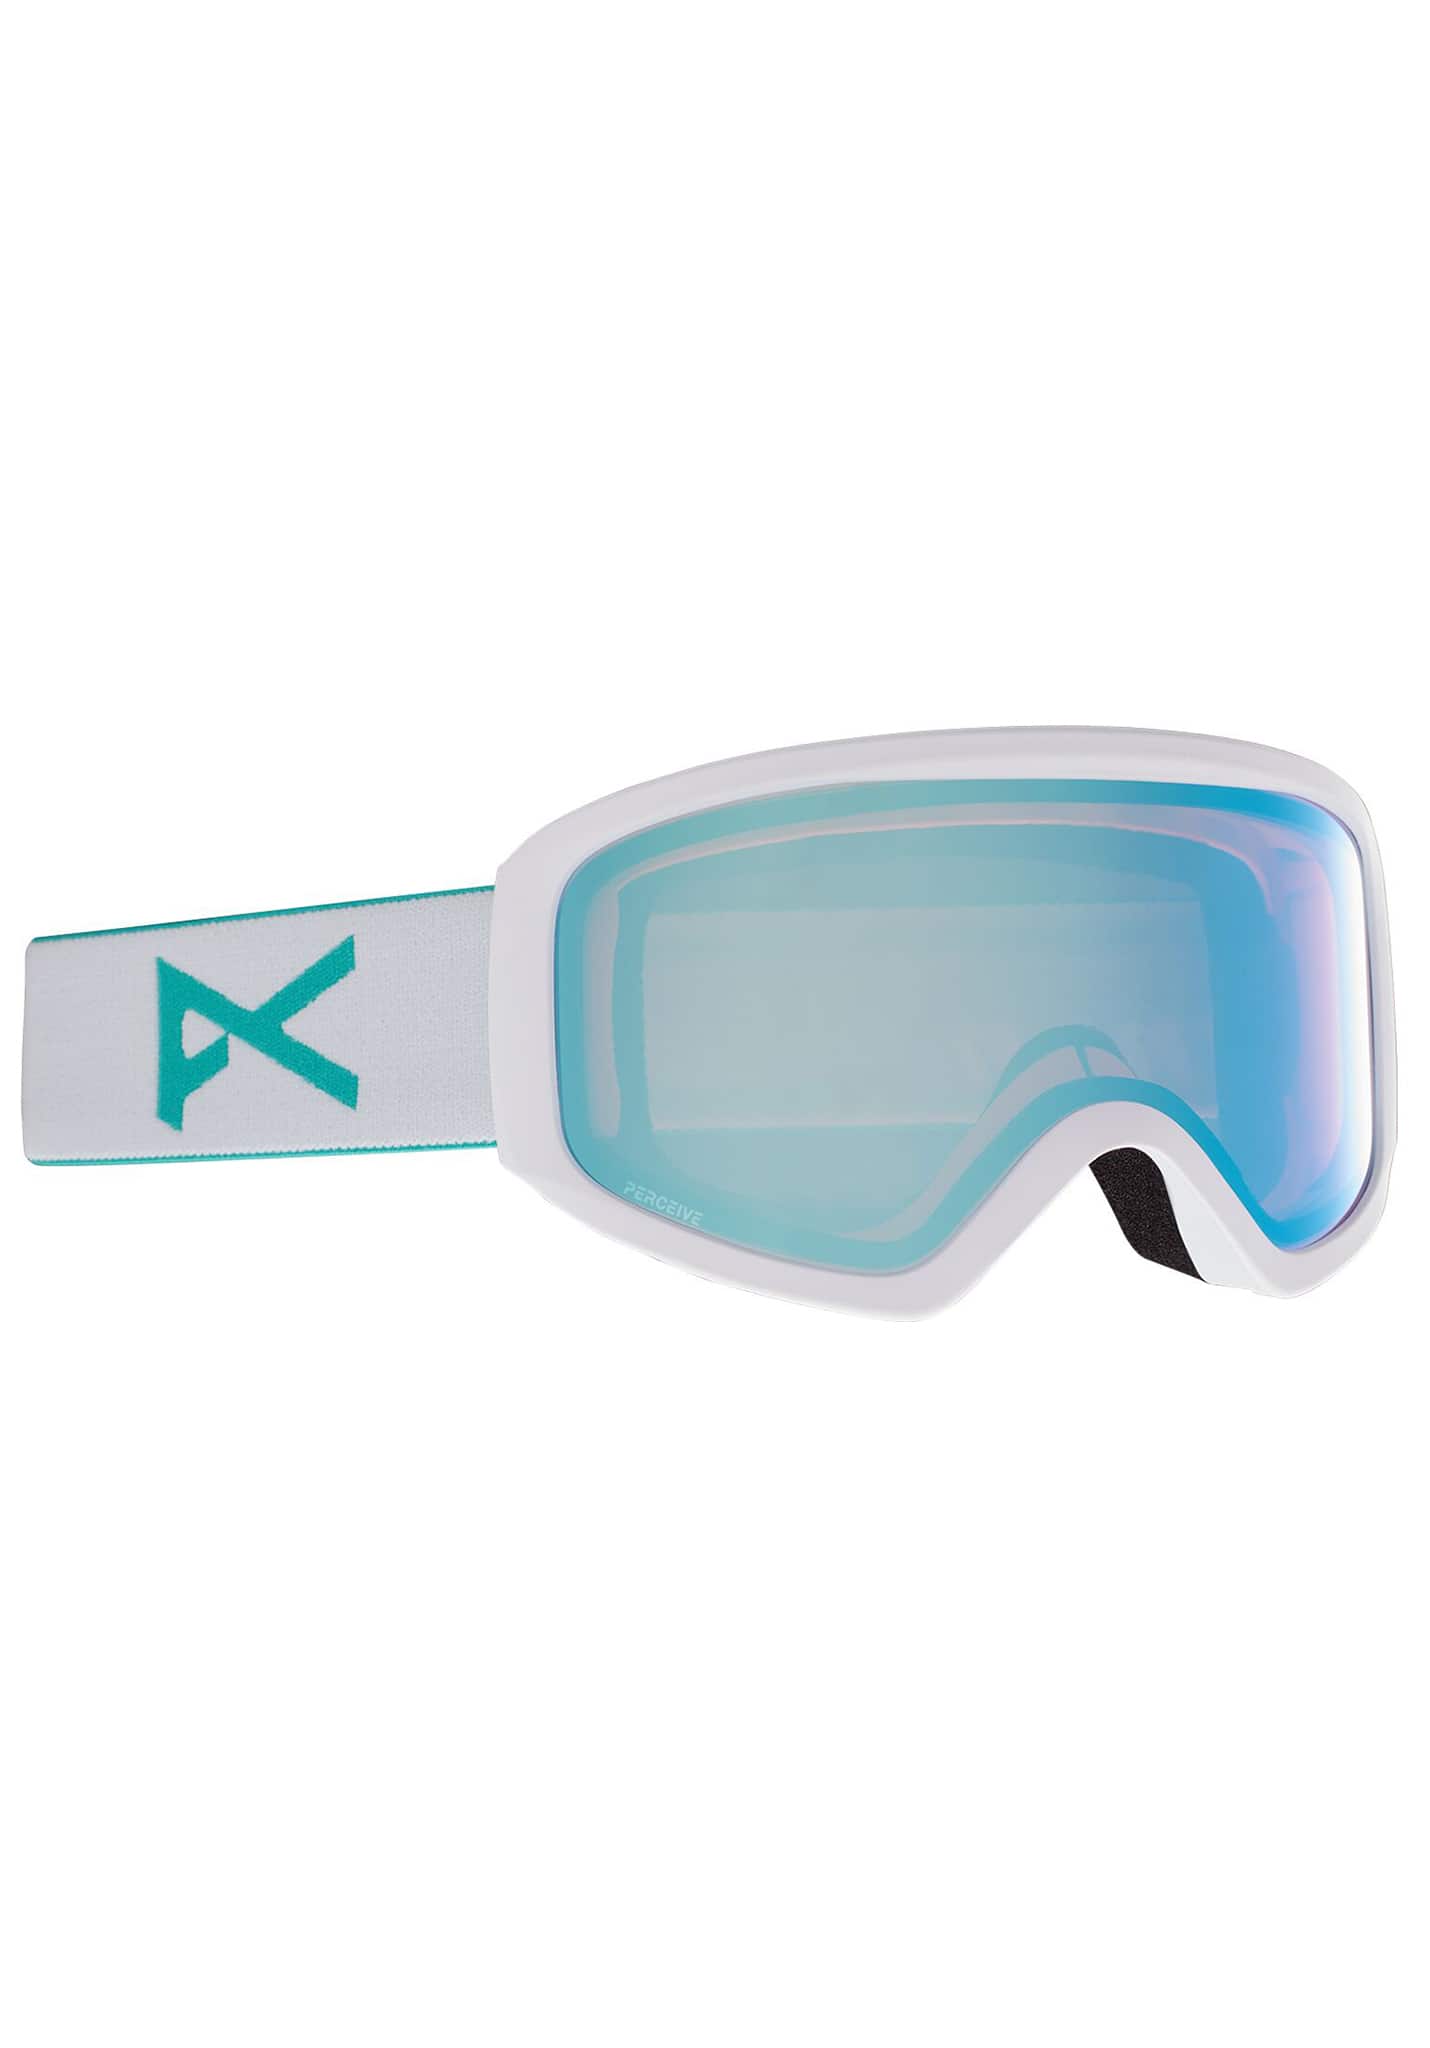 Anon Insight Snowboardbrillen weiß/prcv vrbl blau One Size